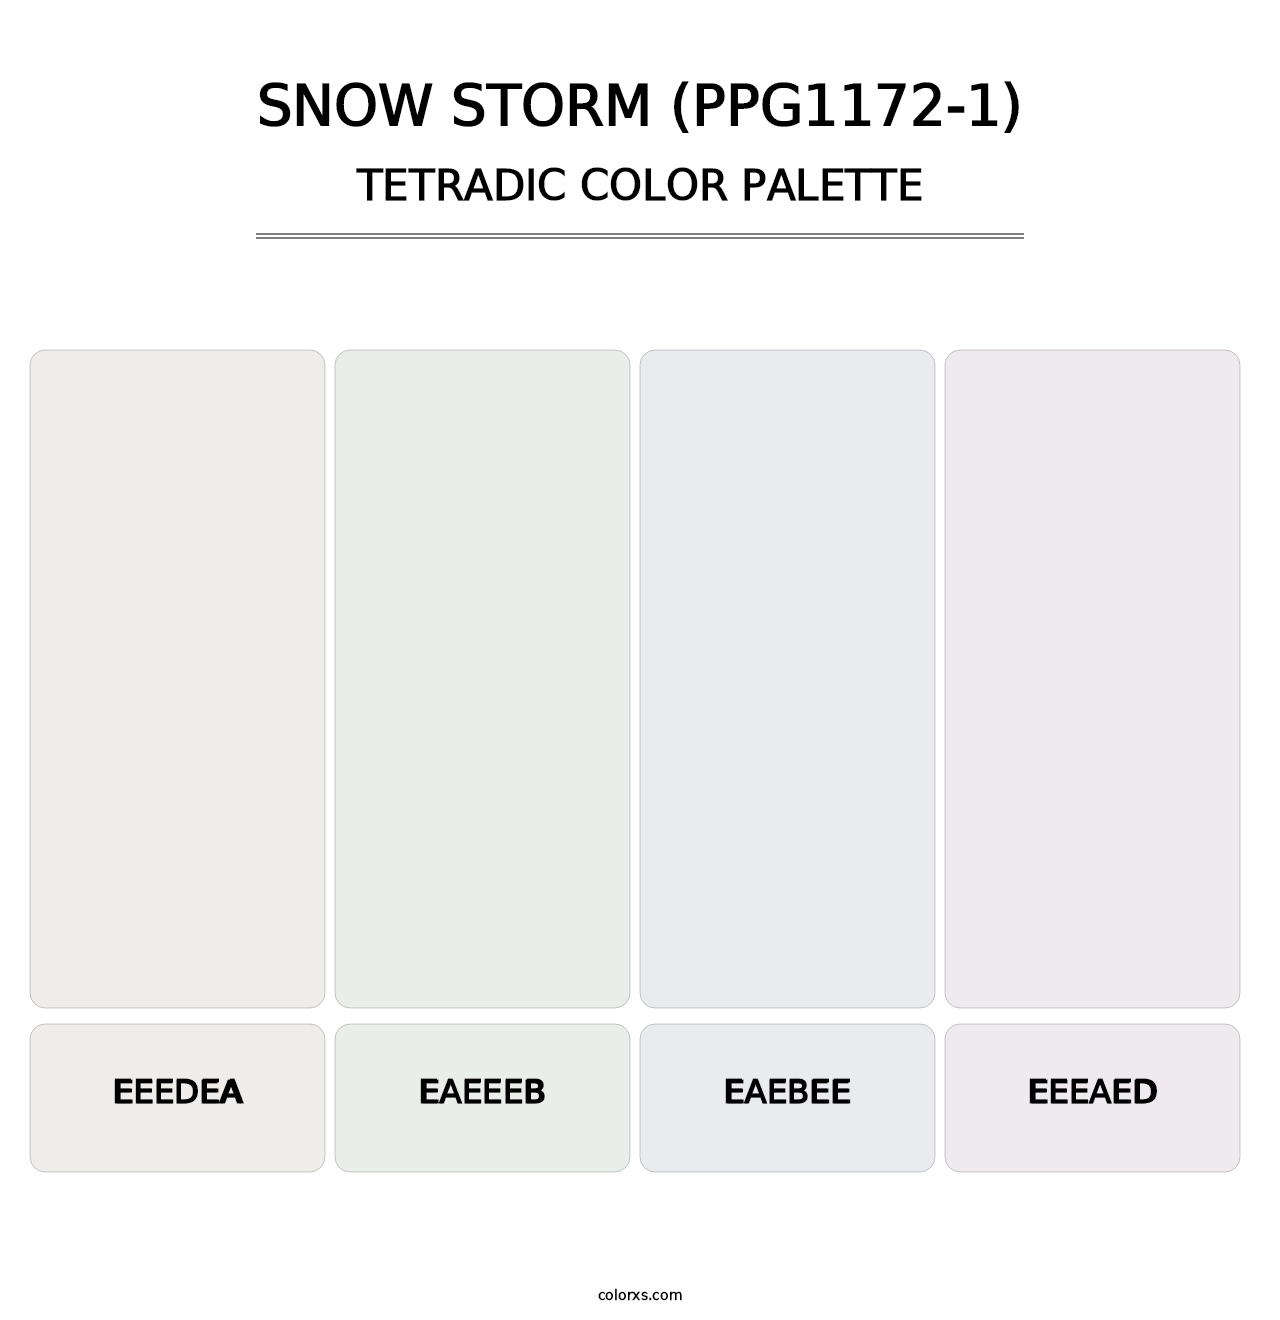 Snow Storm (PPG1172-1) - Tetradic Color Palette